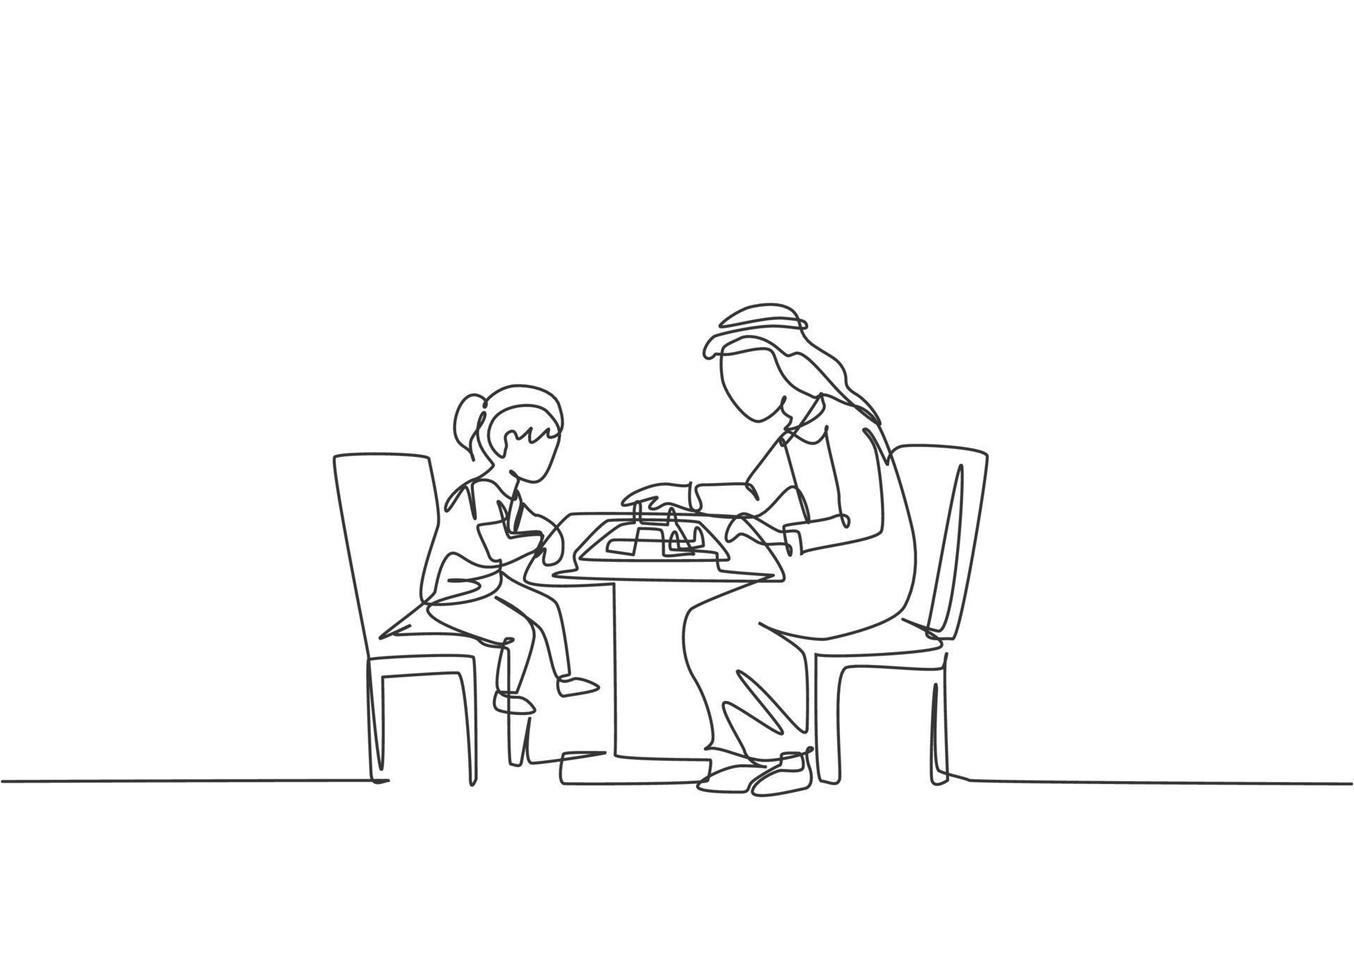 en kontinuerlig linje ritning av ung arabisk pappa och dotter tänkande strategi medan du spelar schack. lyckligt islamiskt muslimskt föräldraskap familjekoncept. dynamisk enkel linje rita design vektor illustration